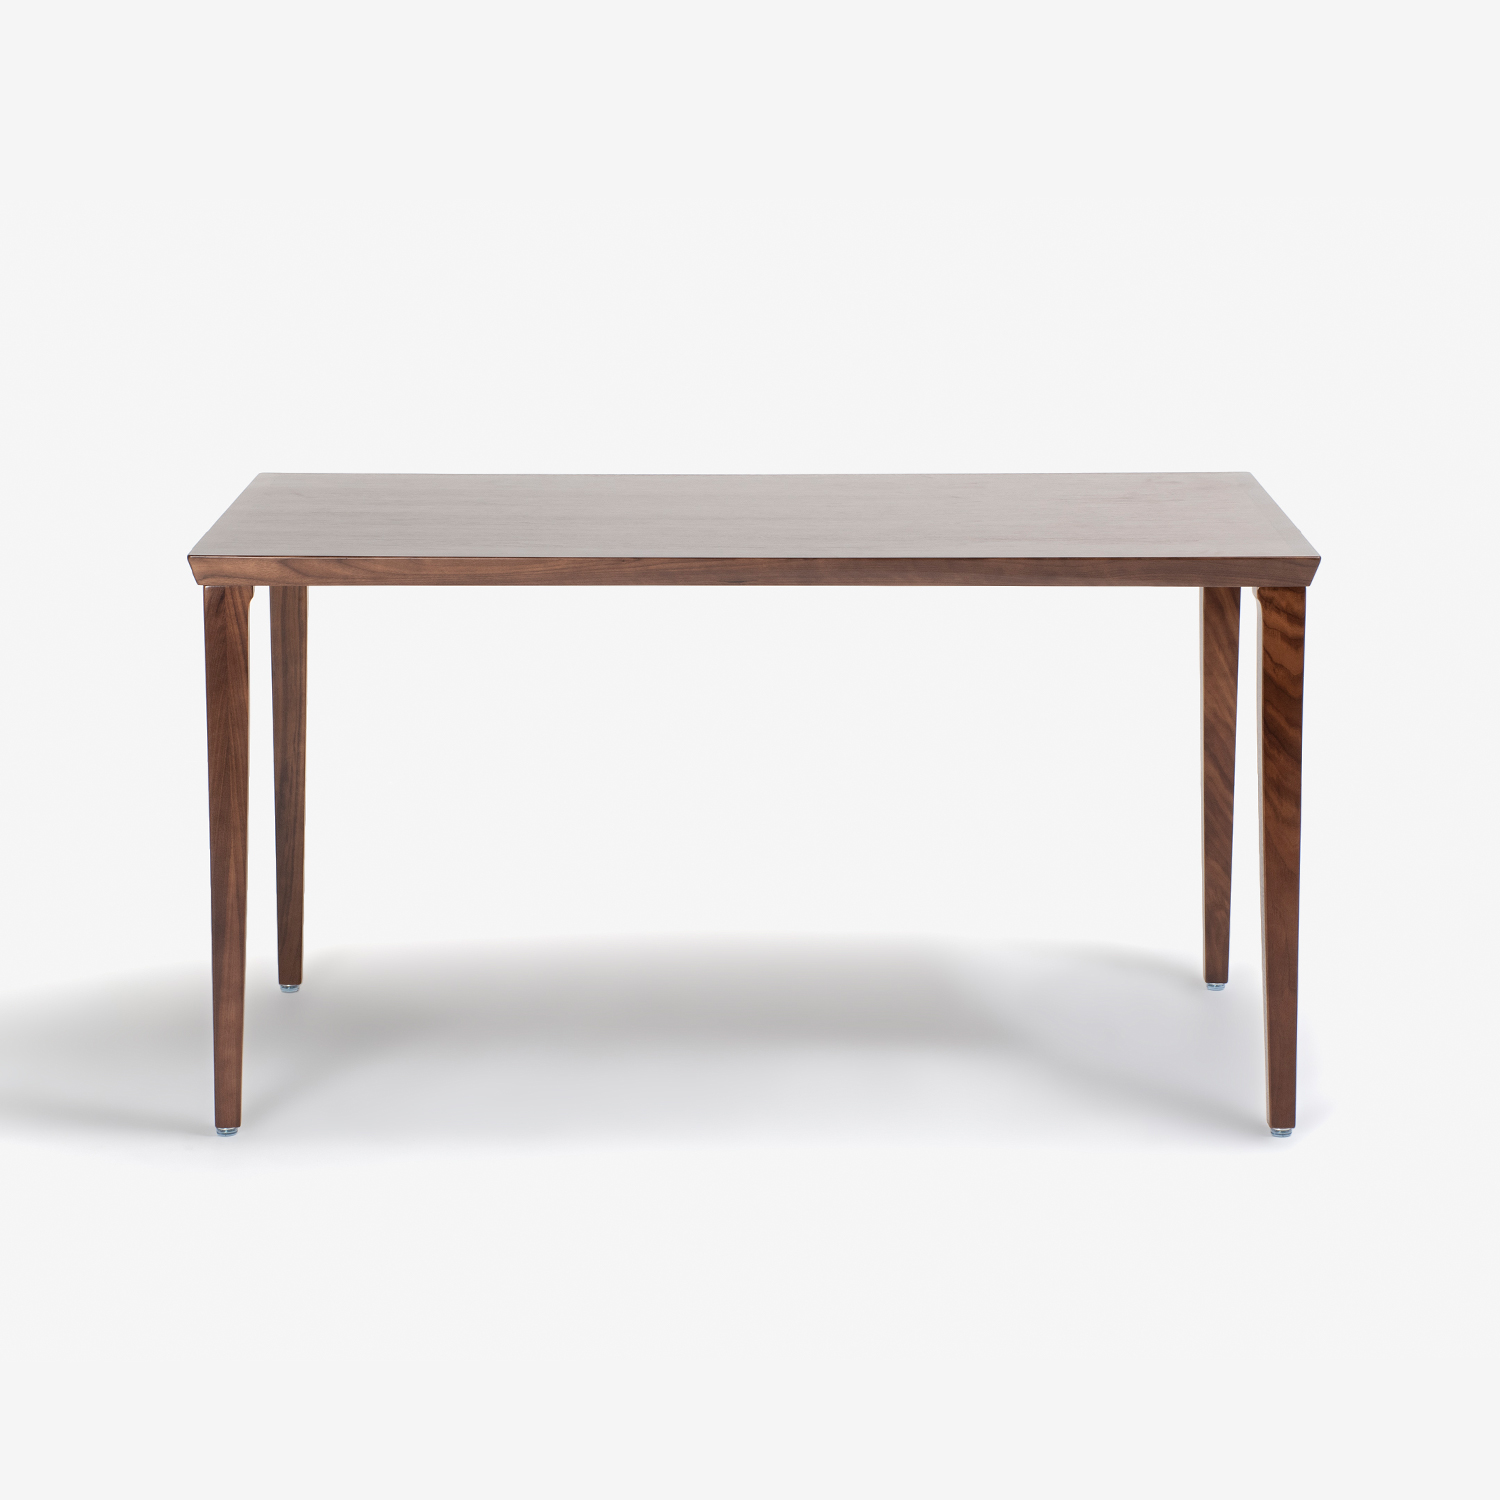 秋田木工 ダイニングテーブル「N-T005」ウォールナット材 全2サイズ【数量限定特別ご提供品のため40%OFF※幅135cmは対象外】